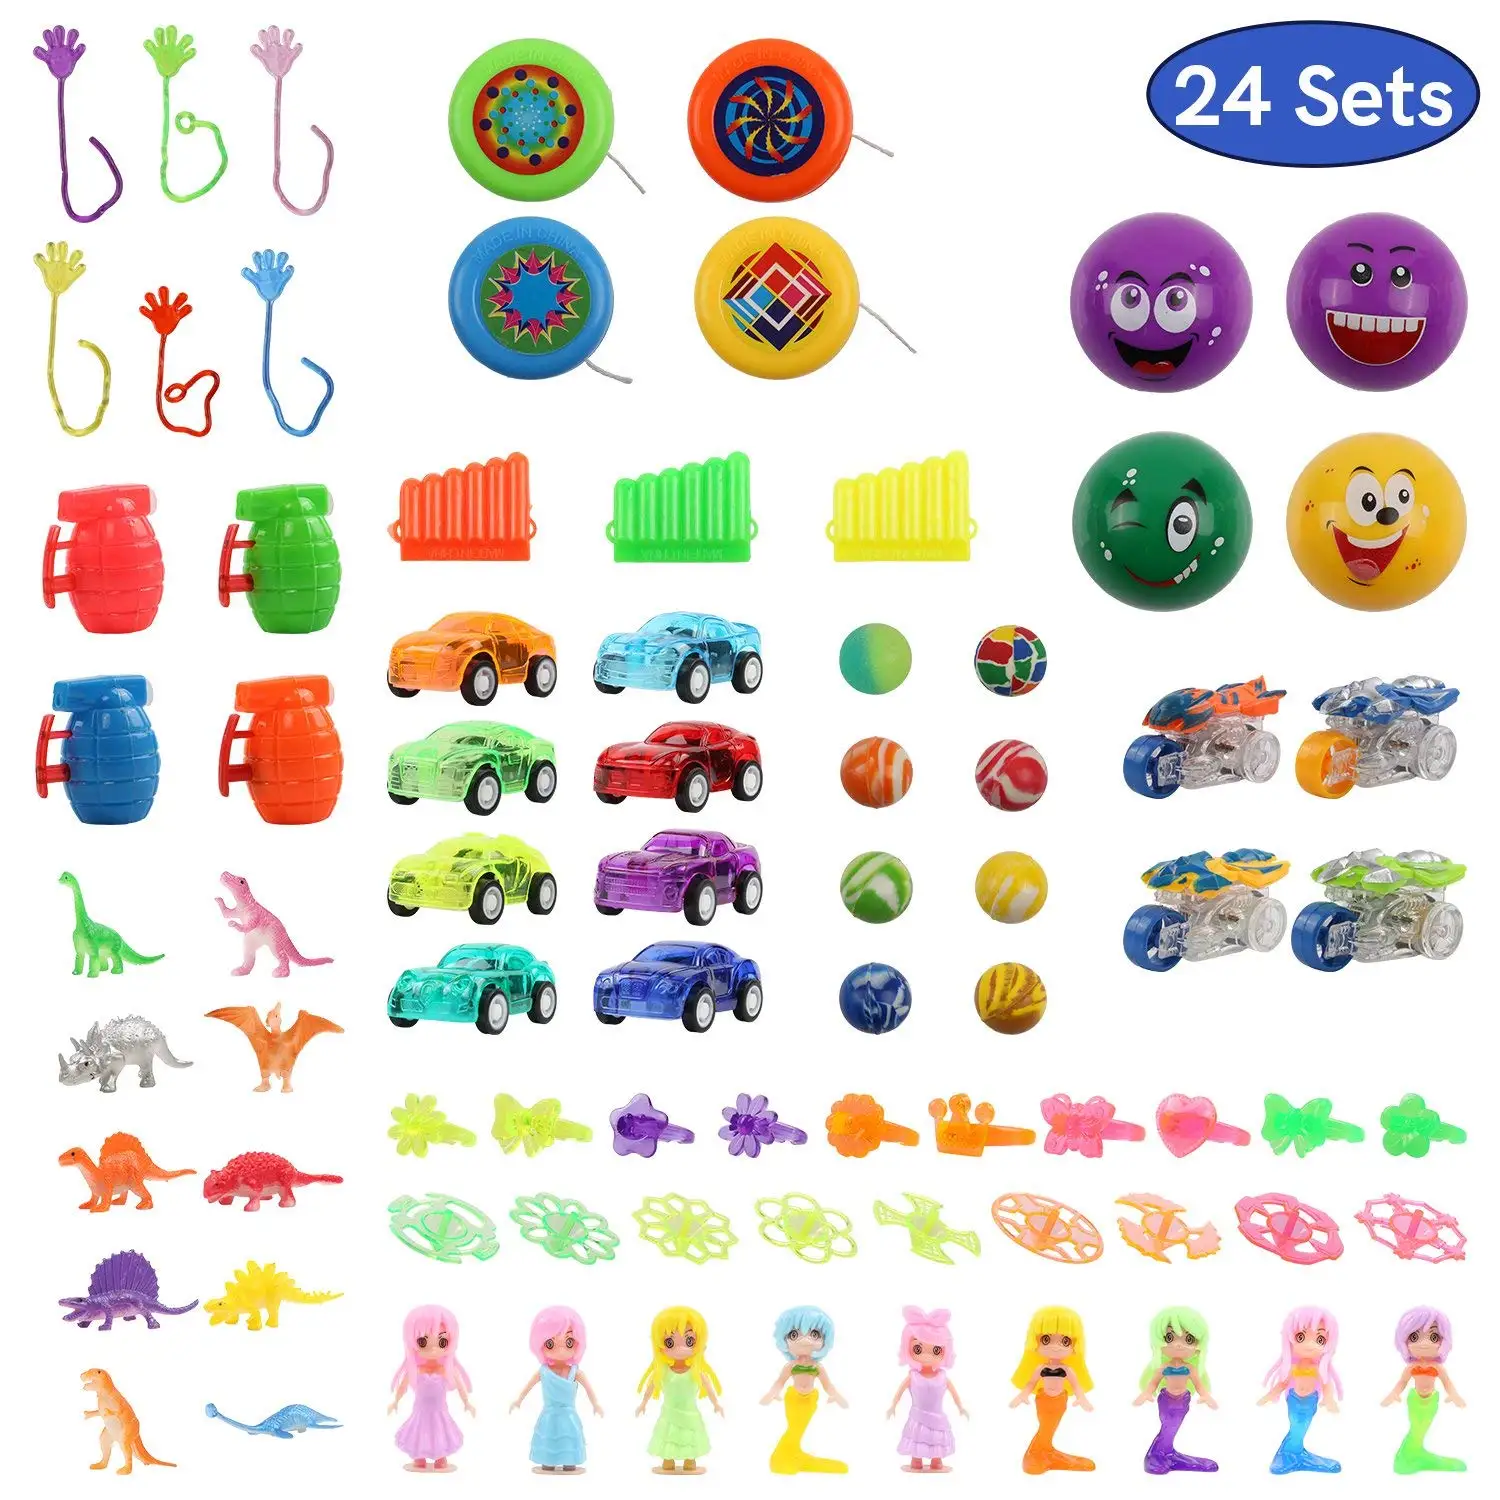 popular toys in 2009